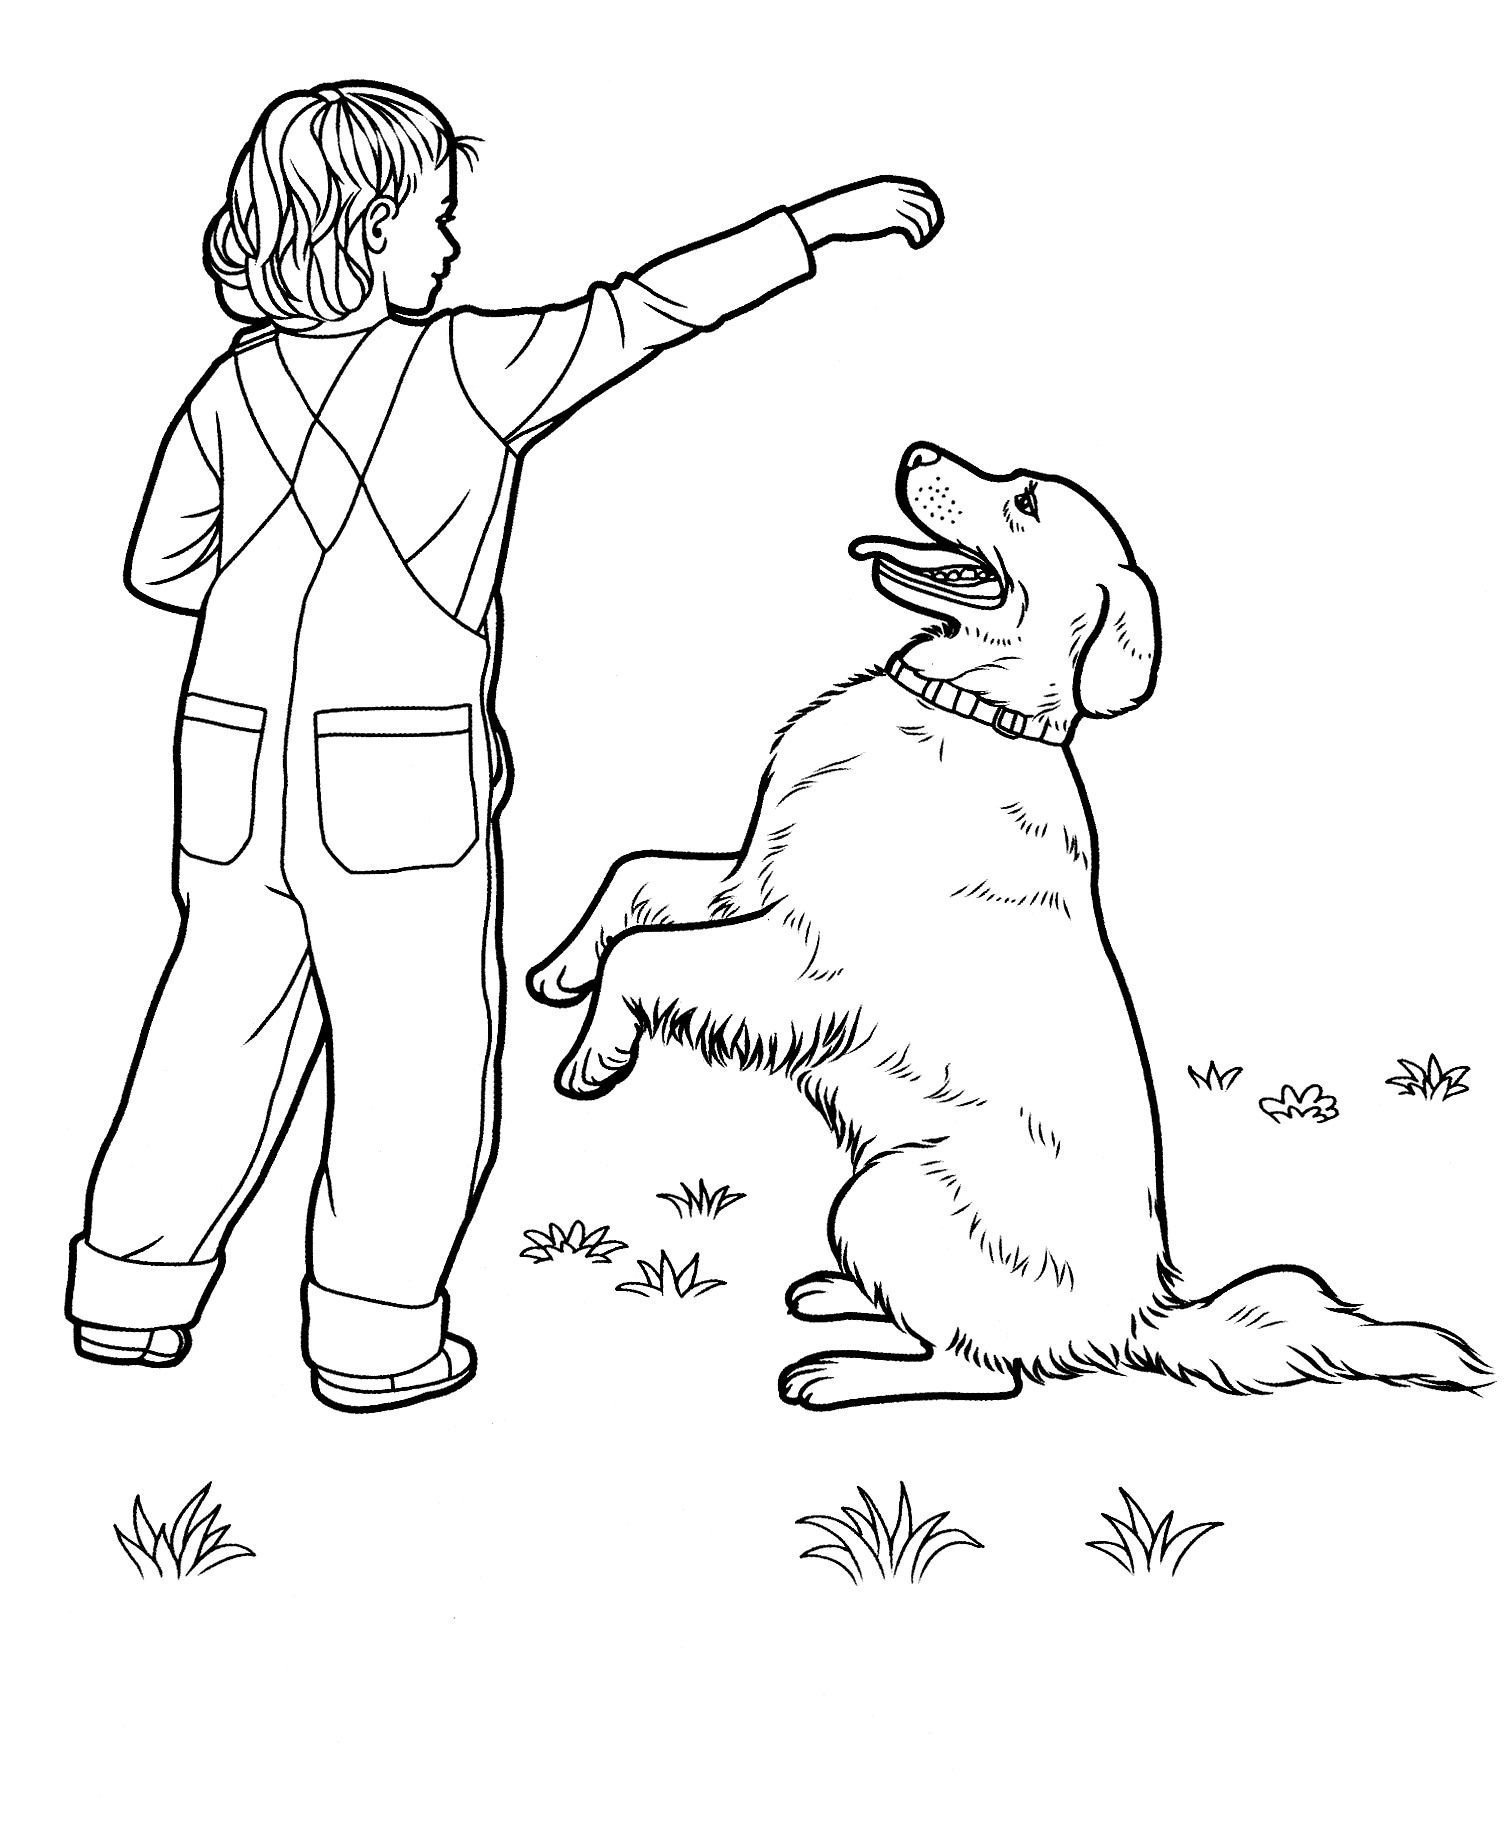 Онлайн раскраска собаки - картинка для детей со щеночком